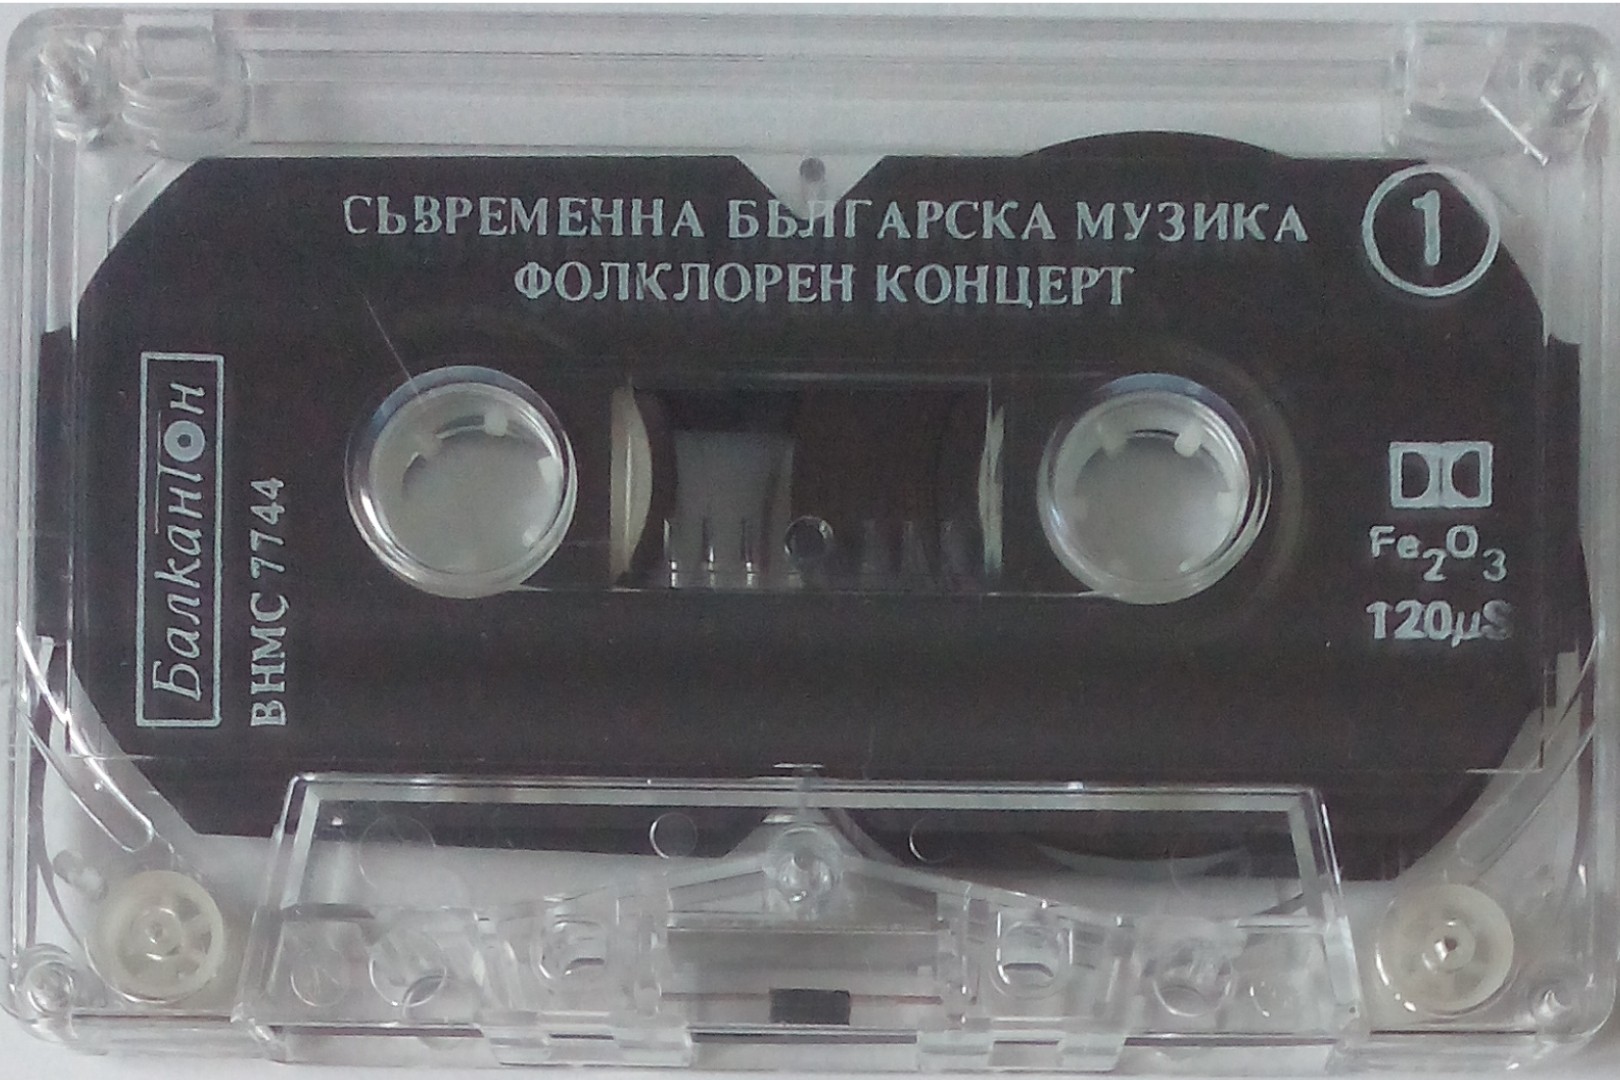 Съвременна българска музика. Български композитори (СБК)